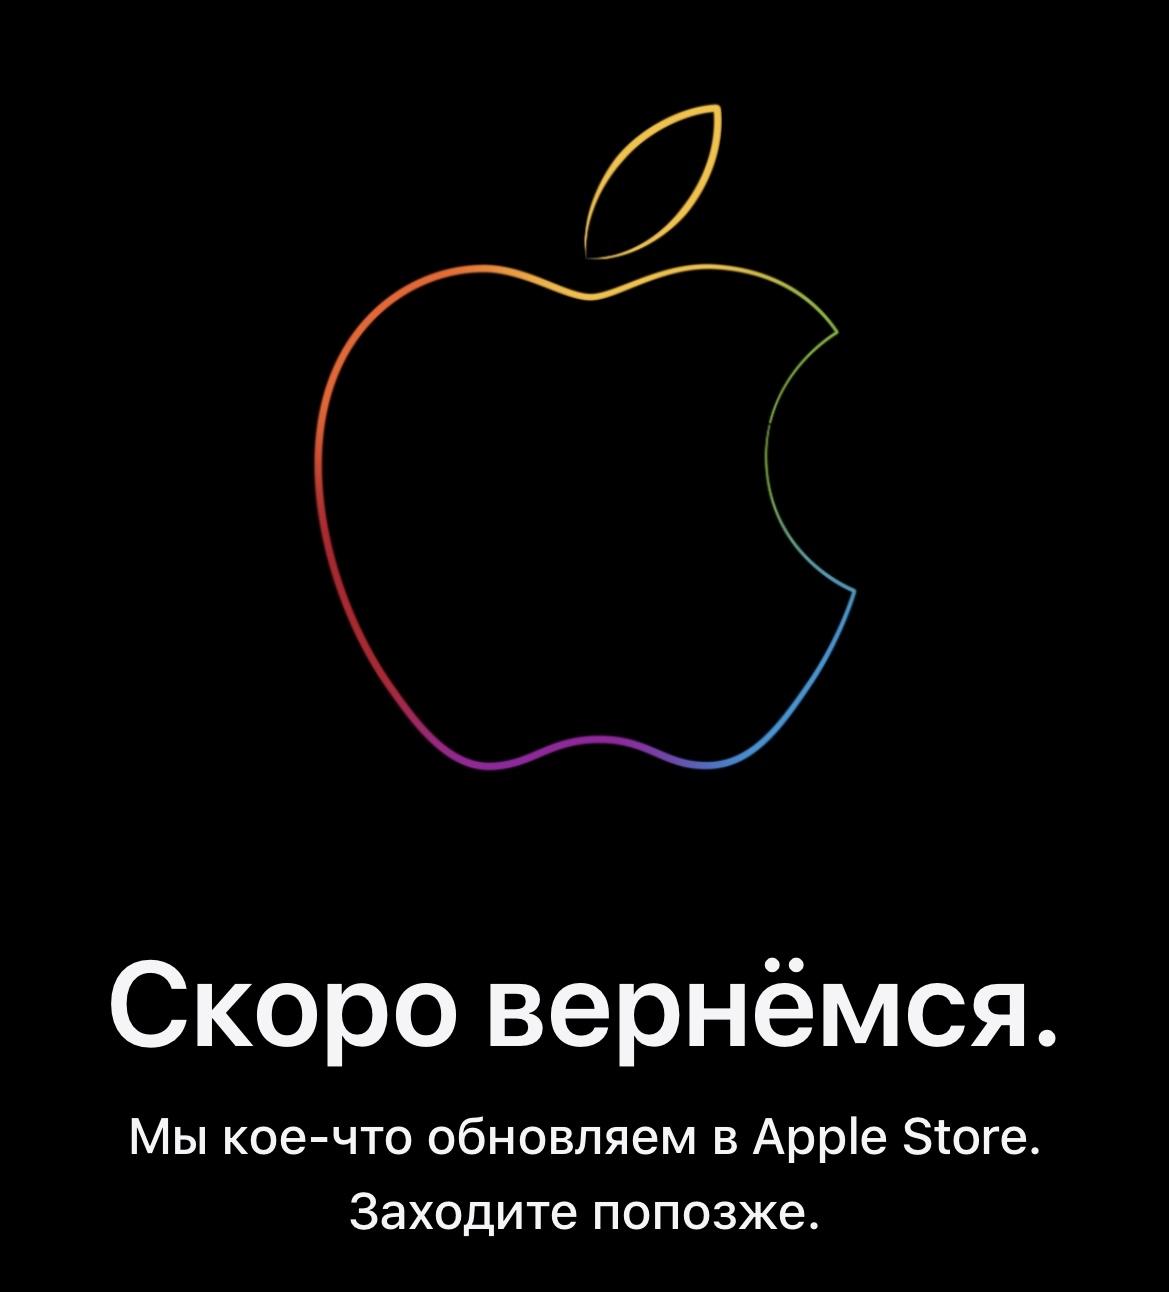 Онлайн-магазин Apple закрылся на обновление 